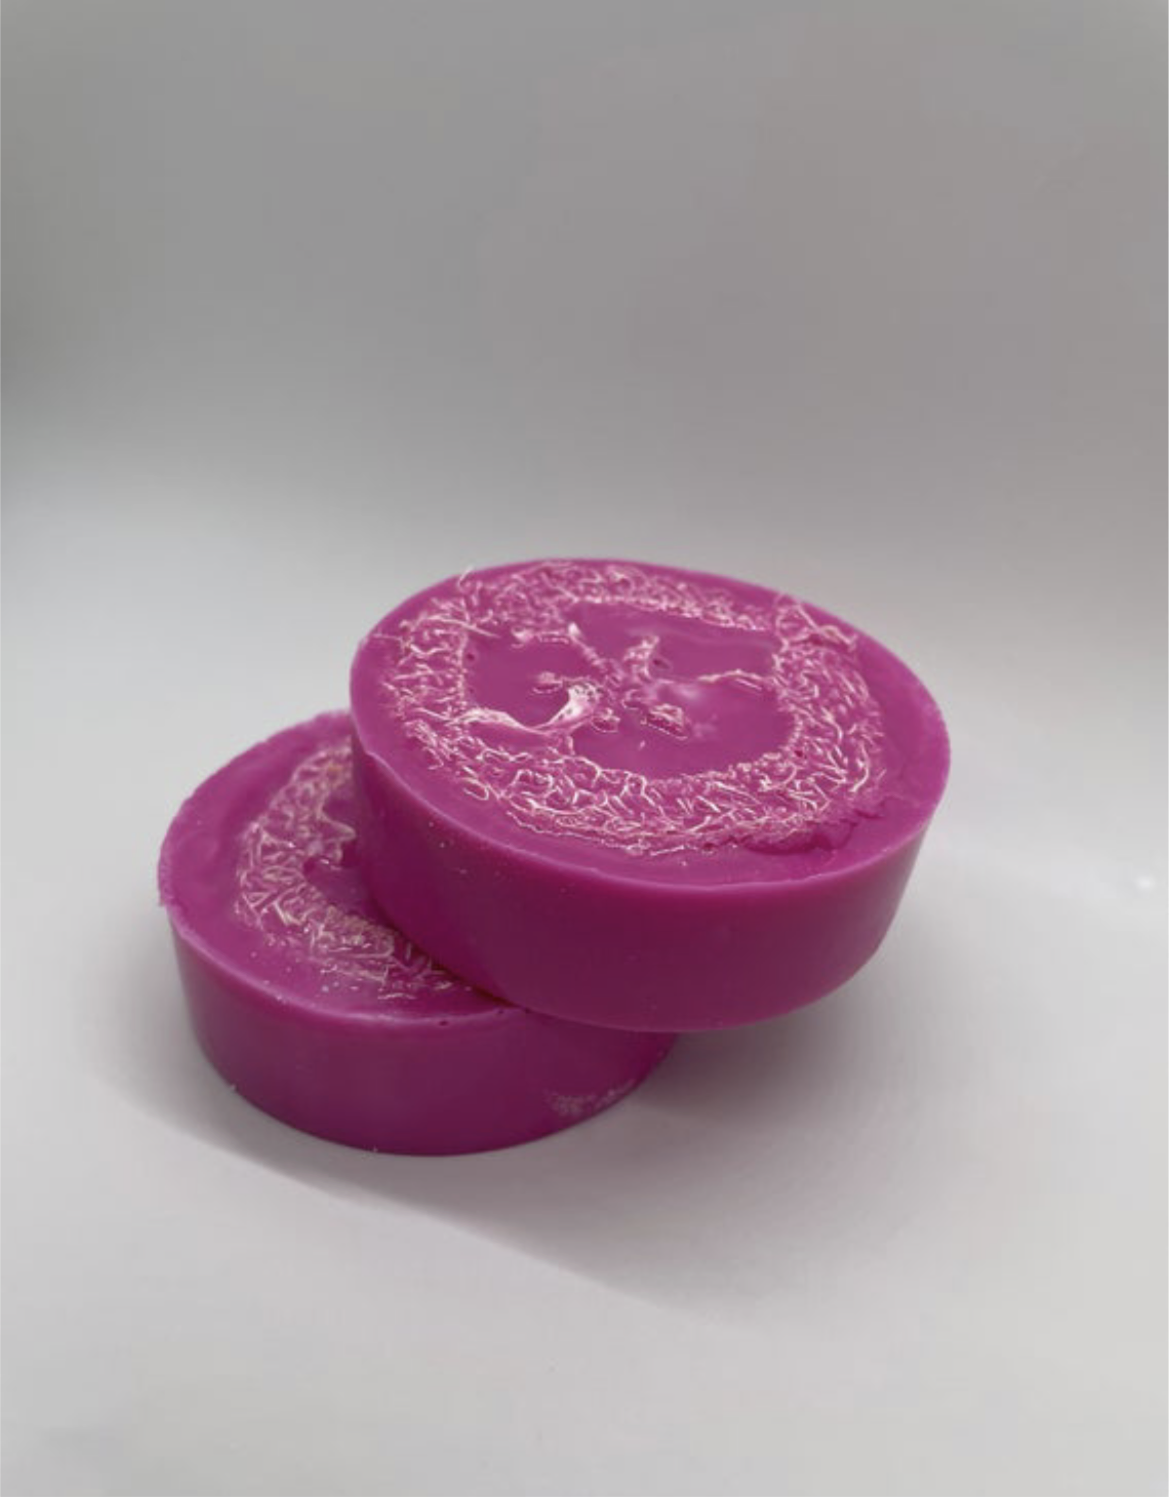 Loofah Soap Bar VARIES IN COLORS